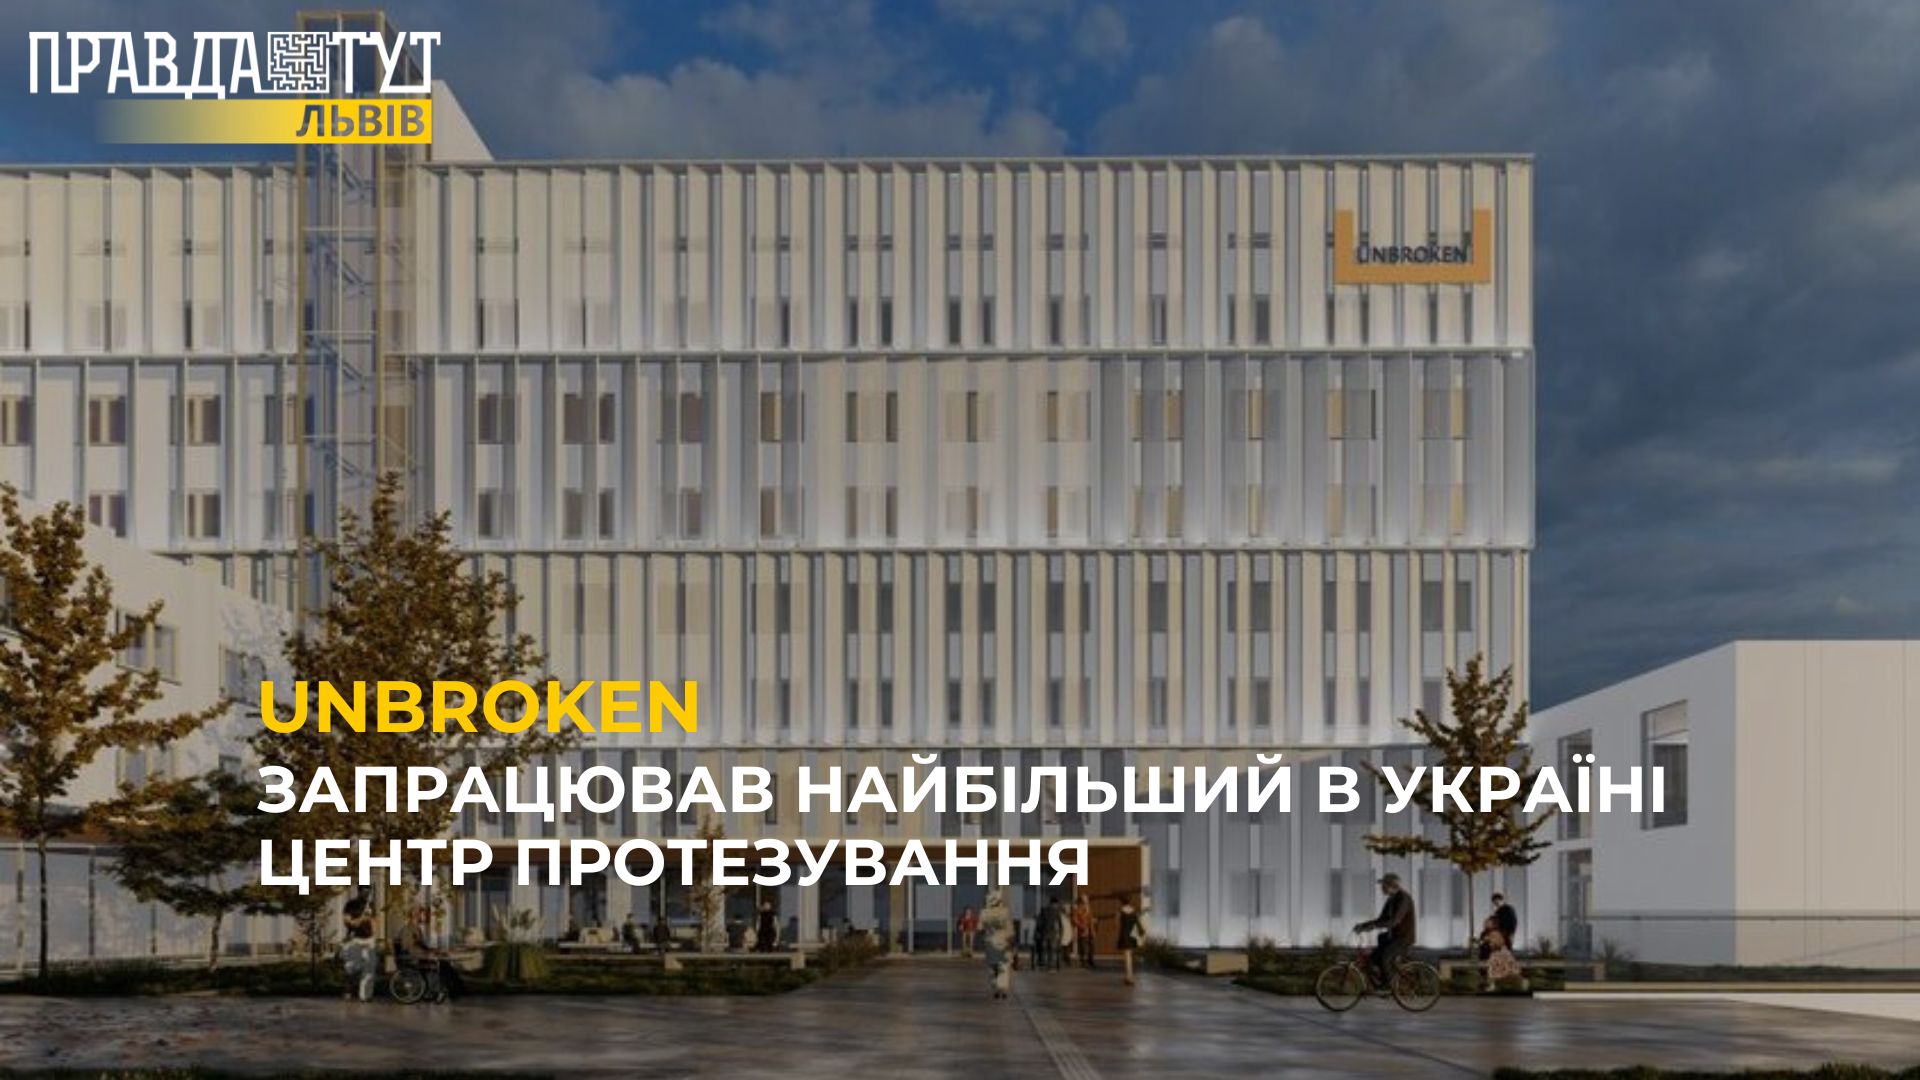 UNBROKEN: Запрацював найбільший в Україні центр протезування